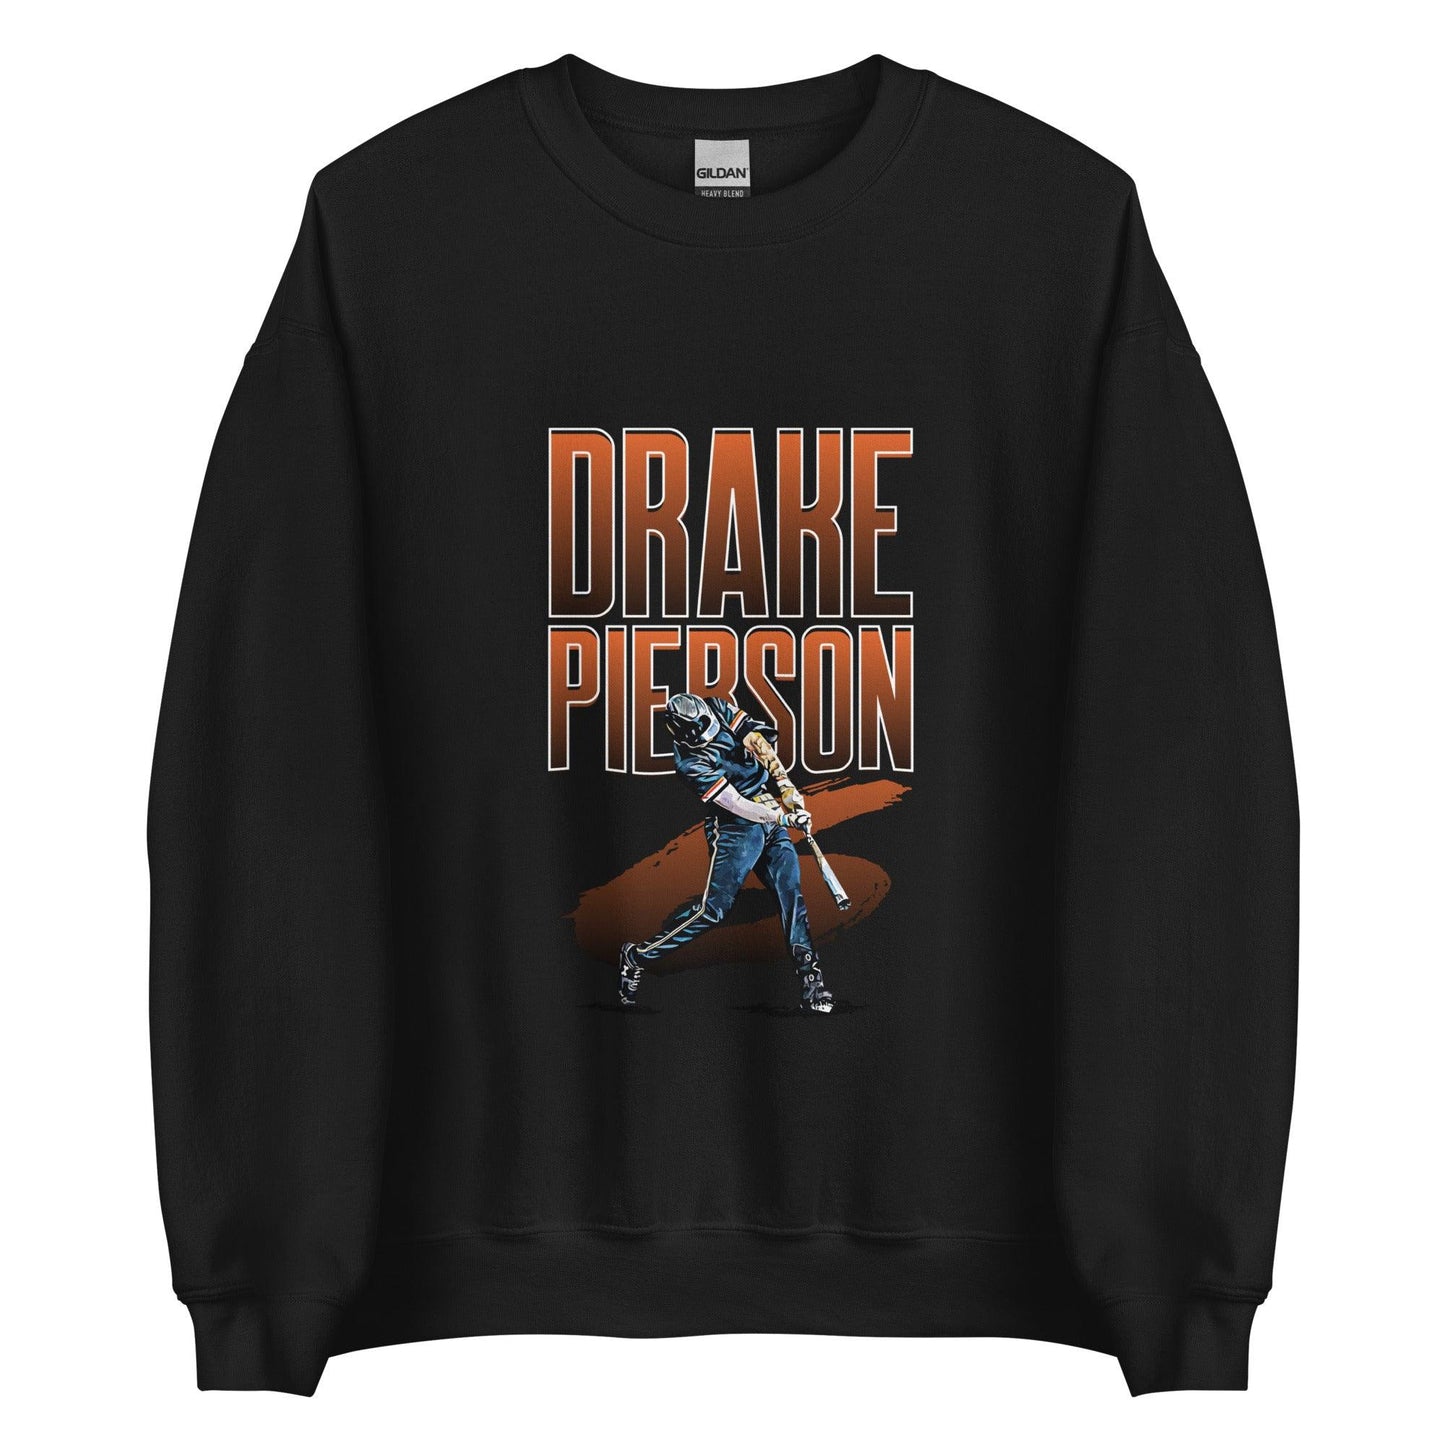 Drake Pierson "Gametime" Sweatshirt - Fan Arch